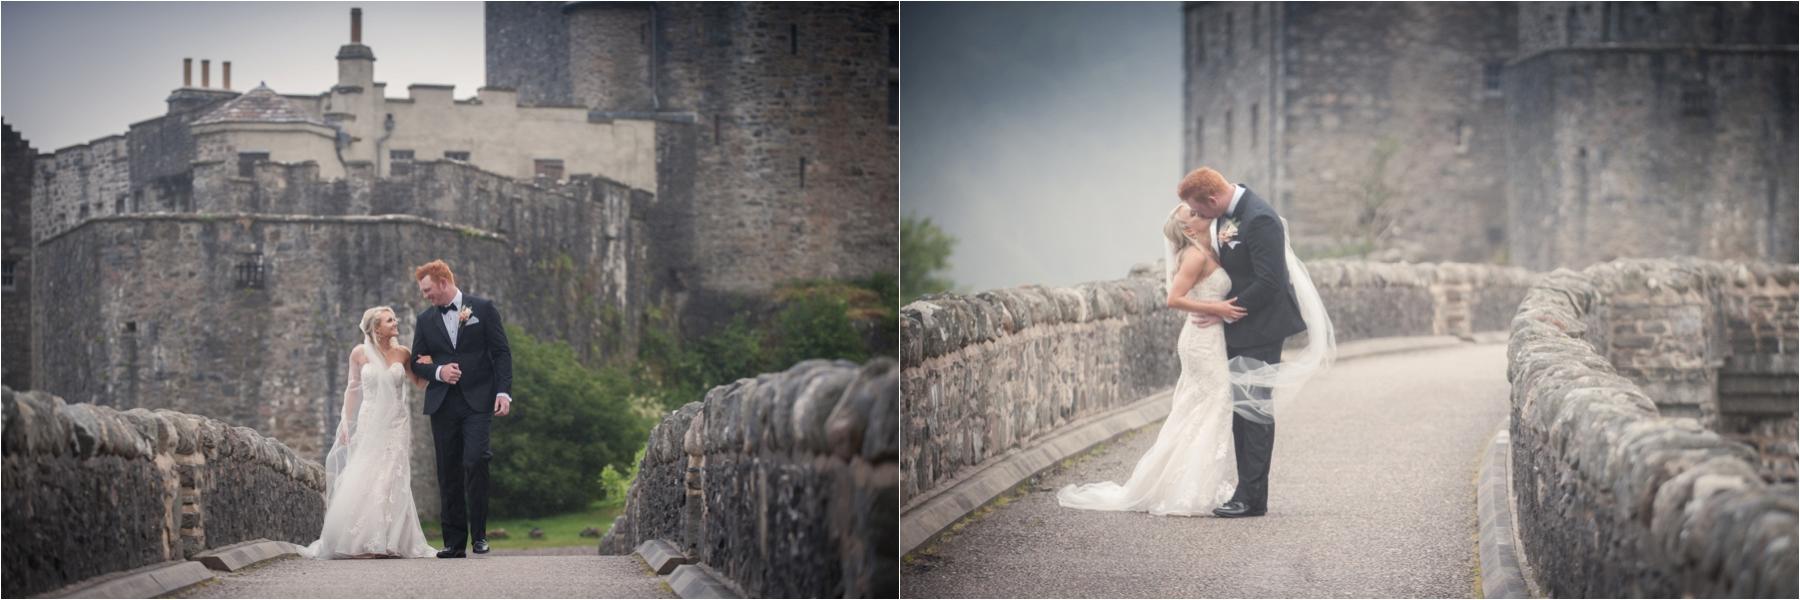 Eilean donan castle portrait shots scottish highland wedding